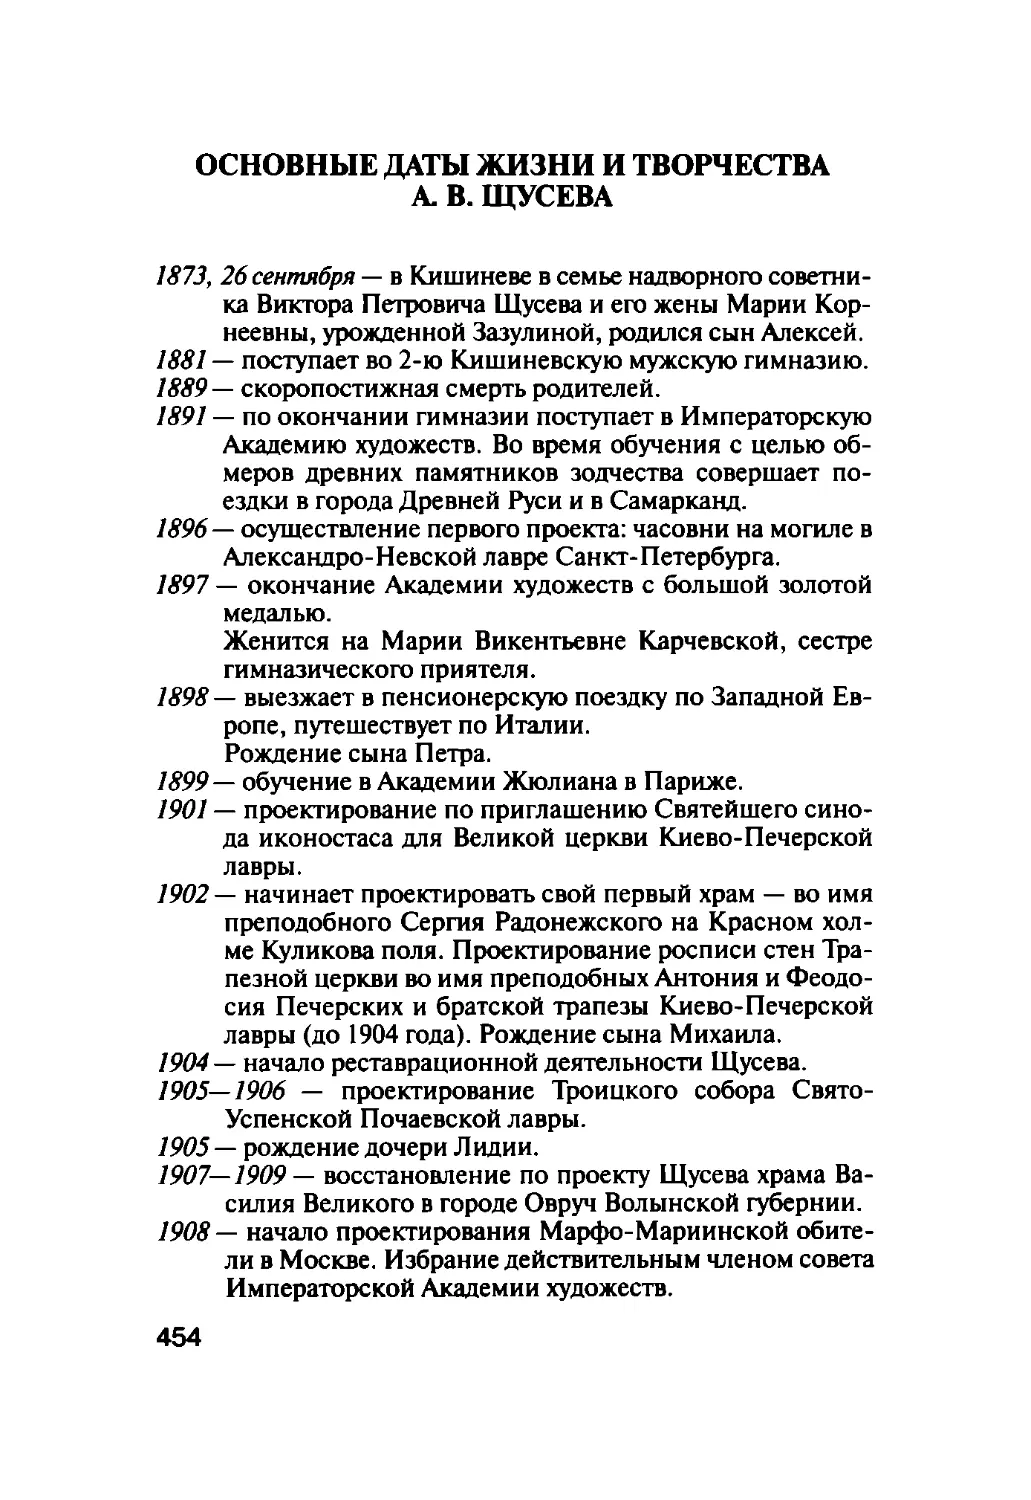 Основные даты жизни и творчества А.В. Щусева